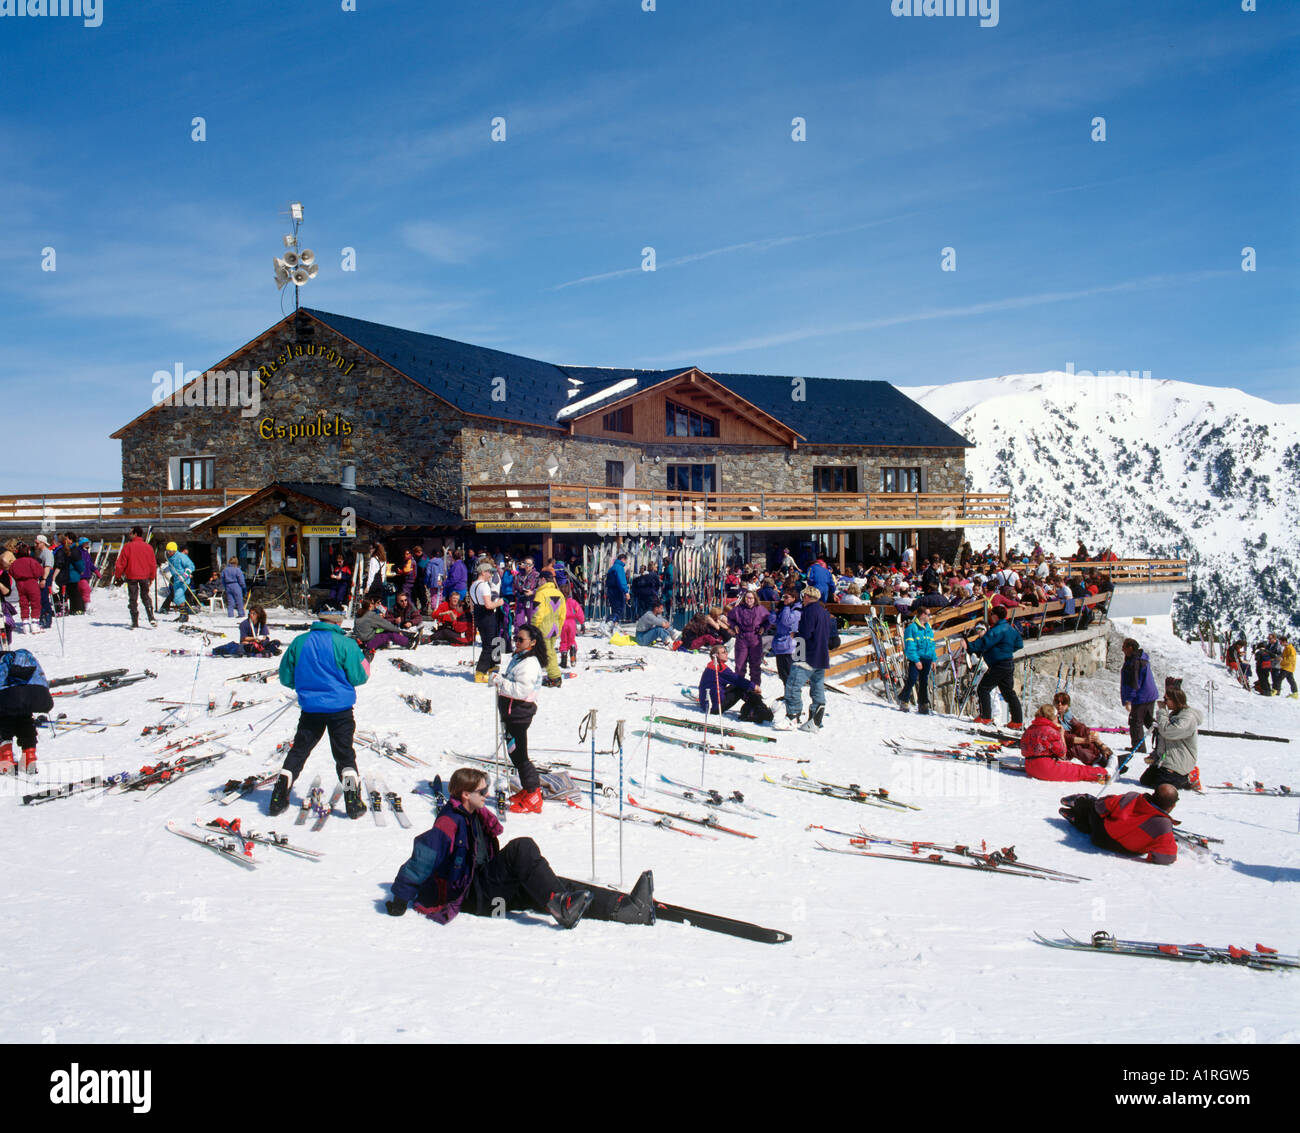 Mountain Restaurant Espiolets, Soldeu Ski Area, Andorra, Pyrenees ...